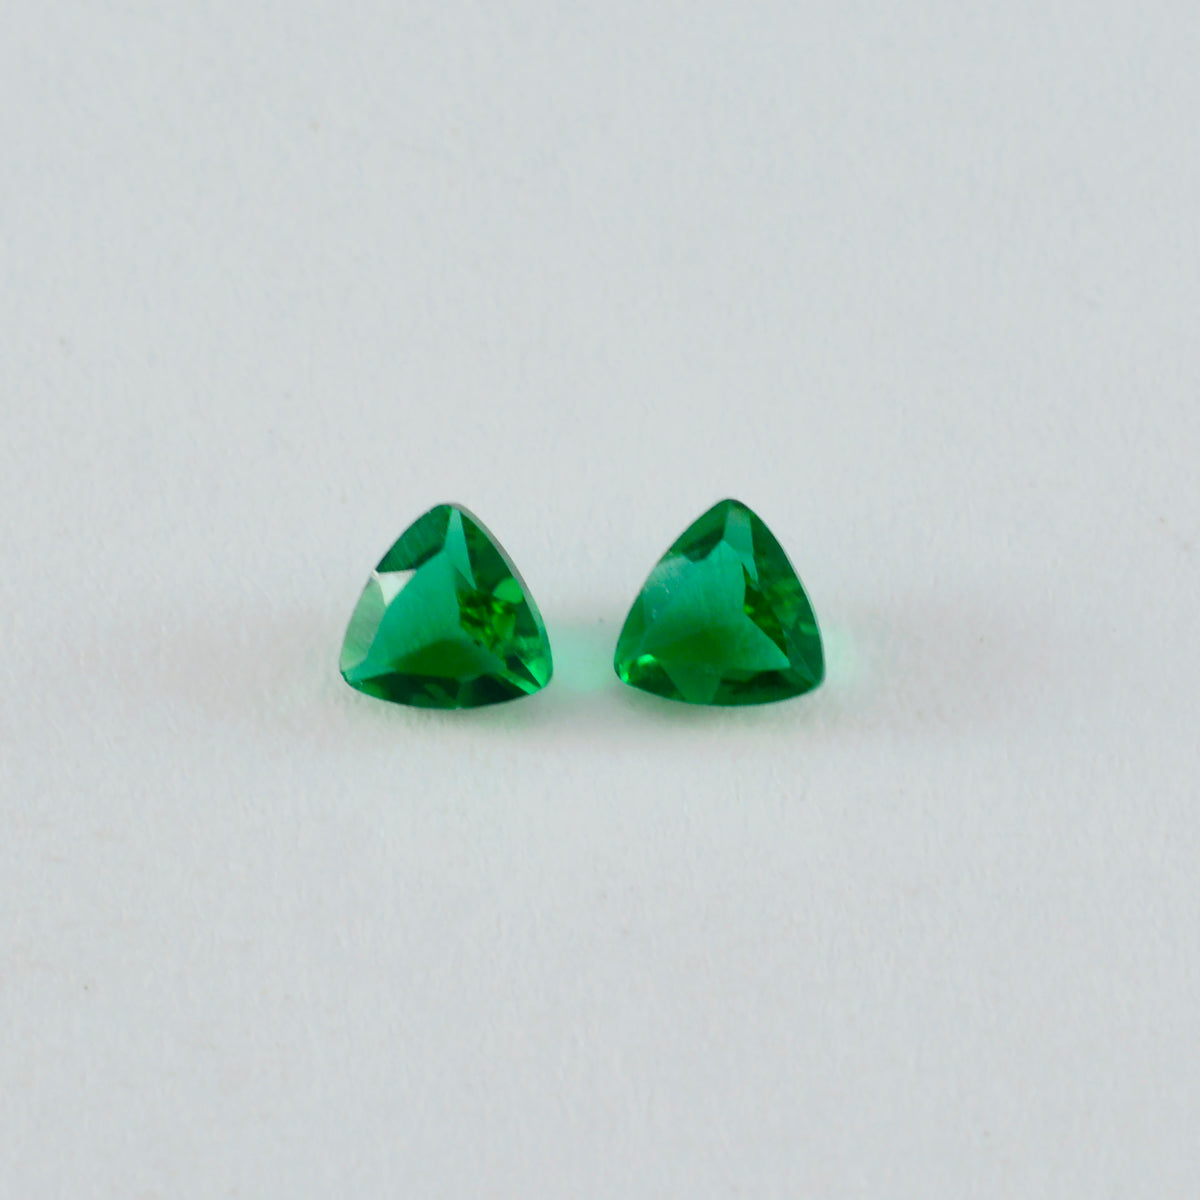 riyogems 1 шт., зеленый изумруд, граненый камень 9x9 мм, форма триллиона, милый качественный свободный камень